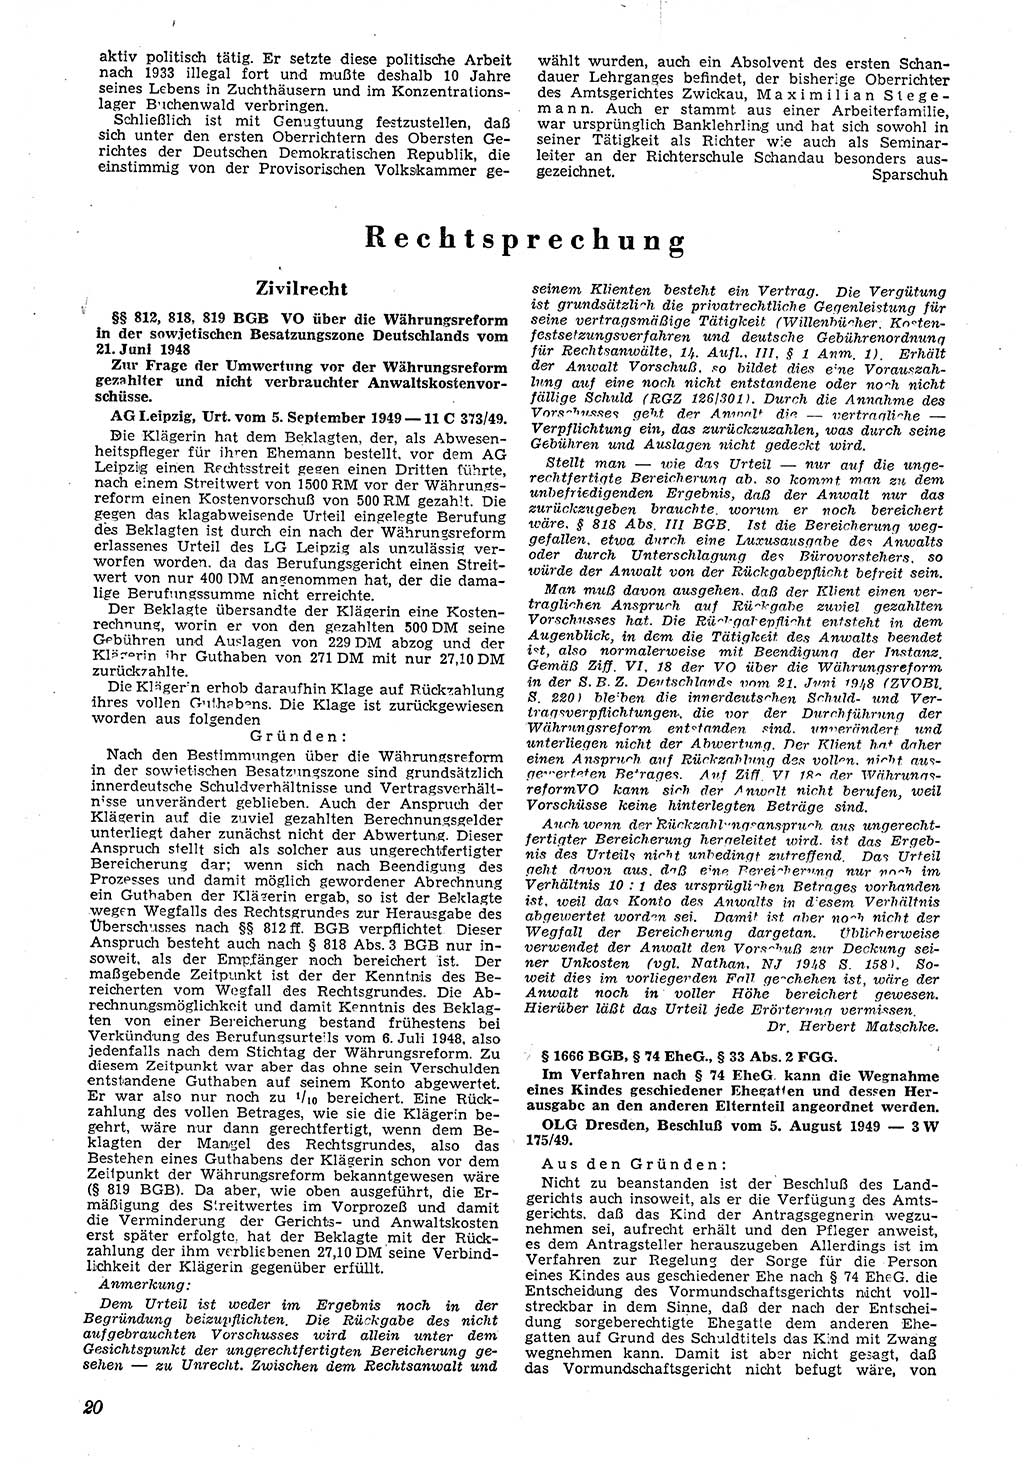 Neue Justiz (NJ), Zeitschrift für Recht und Rechtswissenschaft [Deutsche Demokratische Republik (DDR)], 4. Jahrgang 1950, Seite 20 (NJ DDR 1950, S. 20)